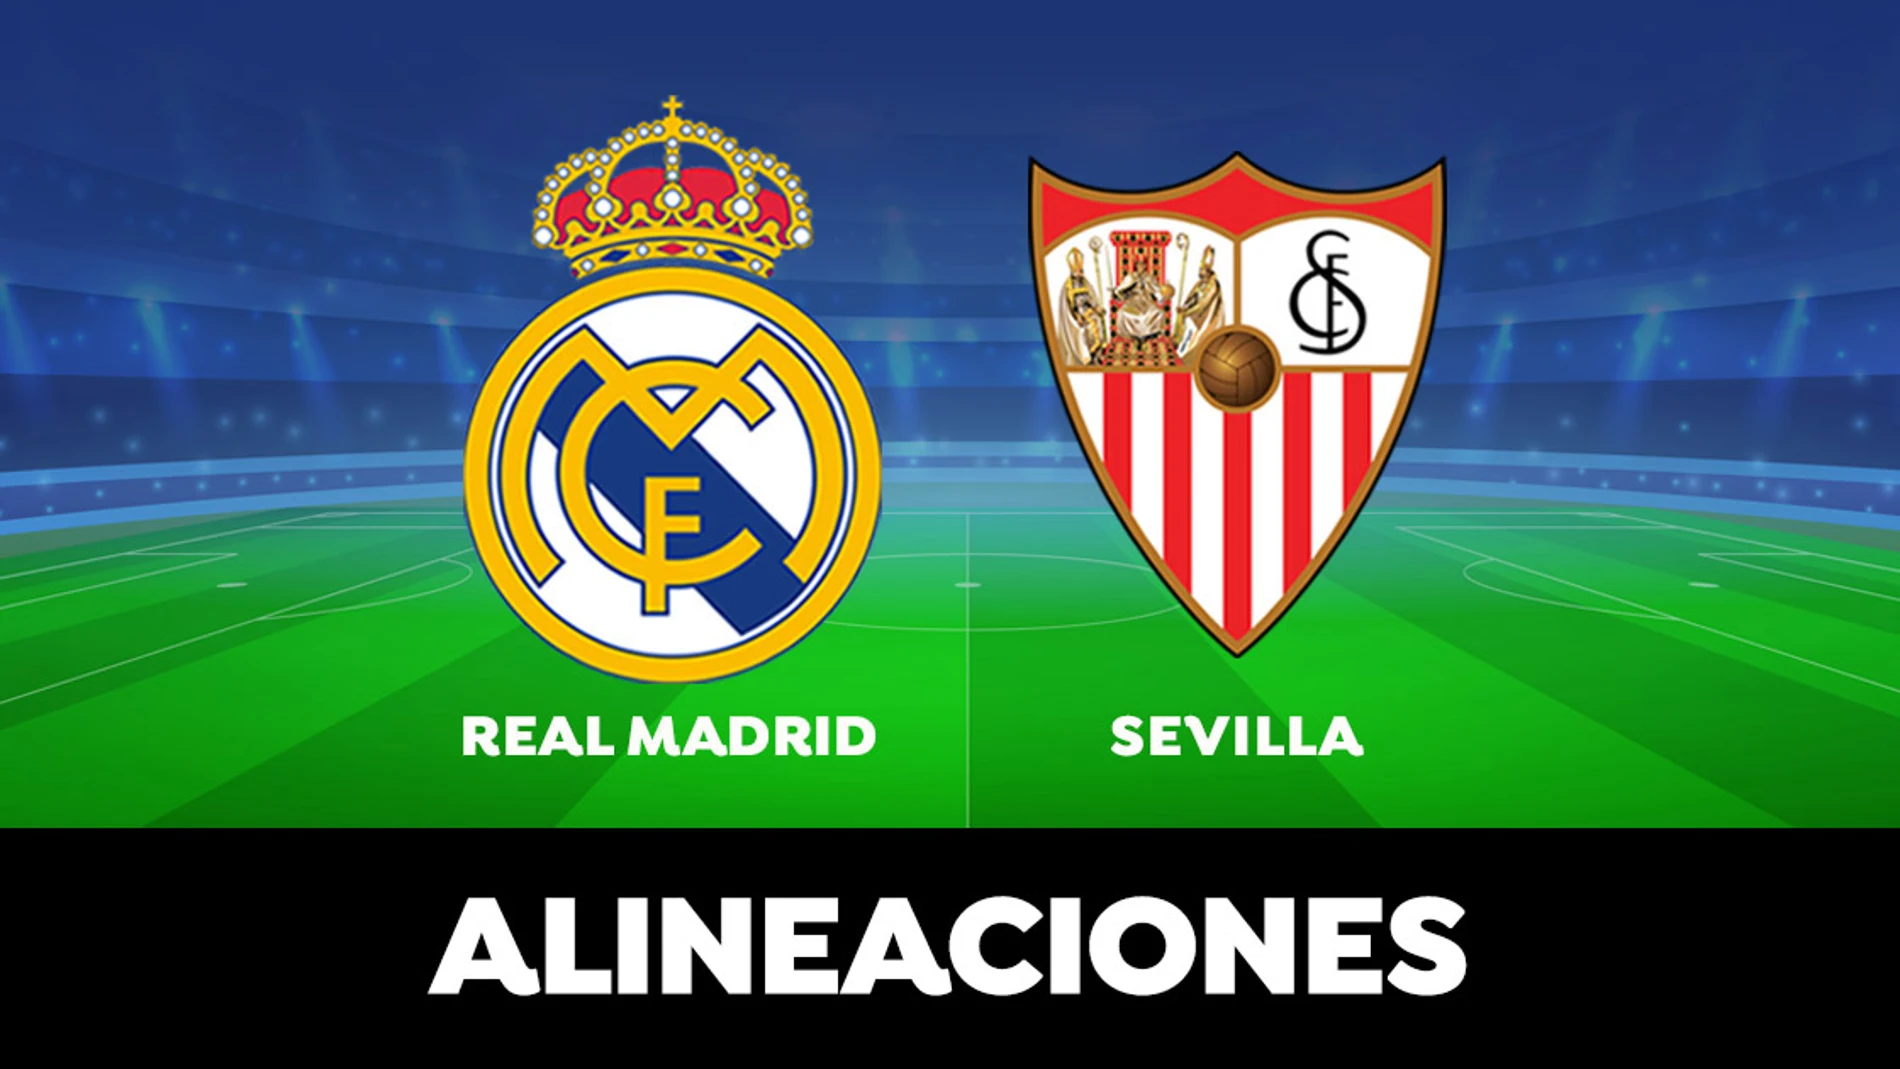 Real Madrid - Sevilla: Alineaciones del partido de la Liga Santander en directo